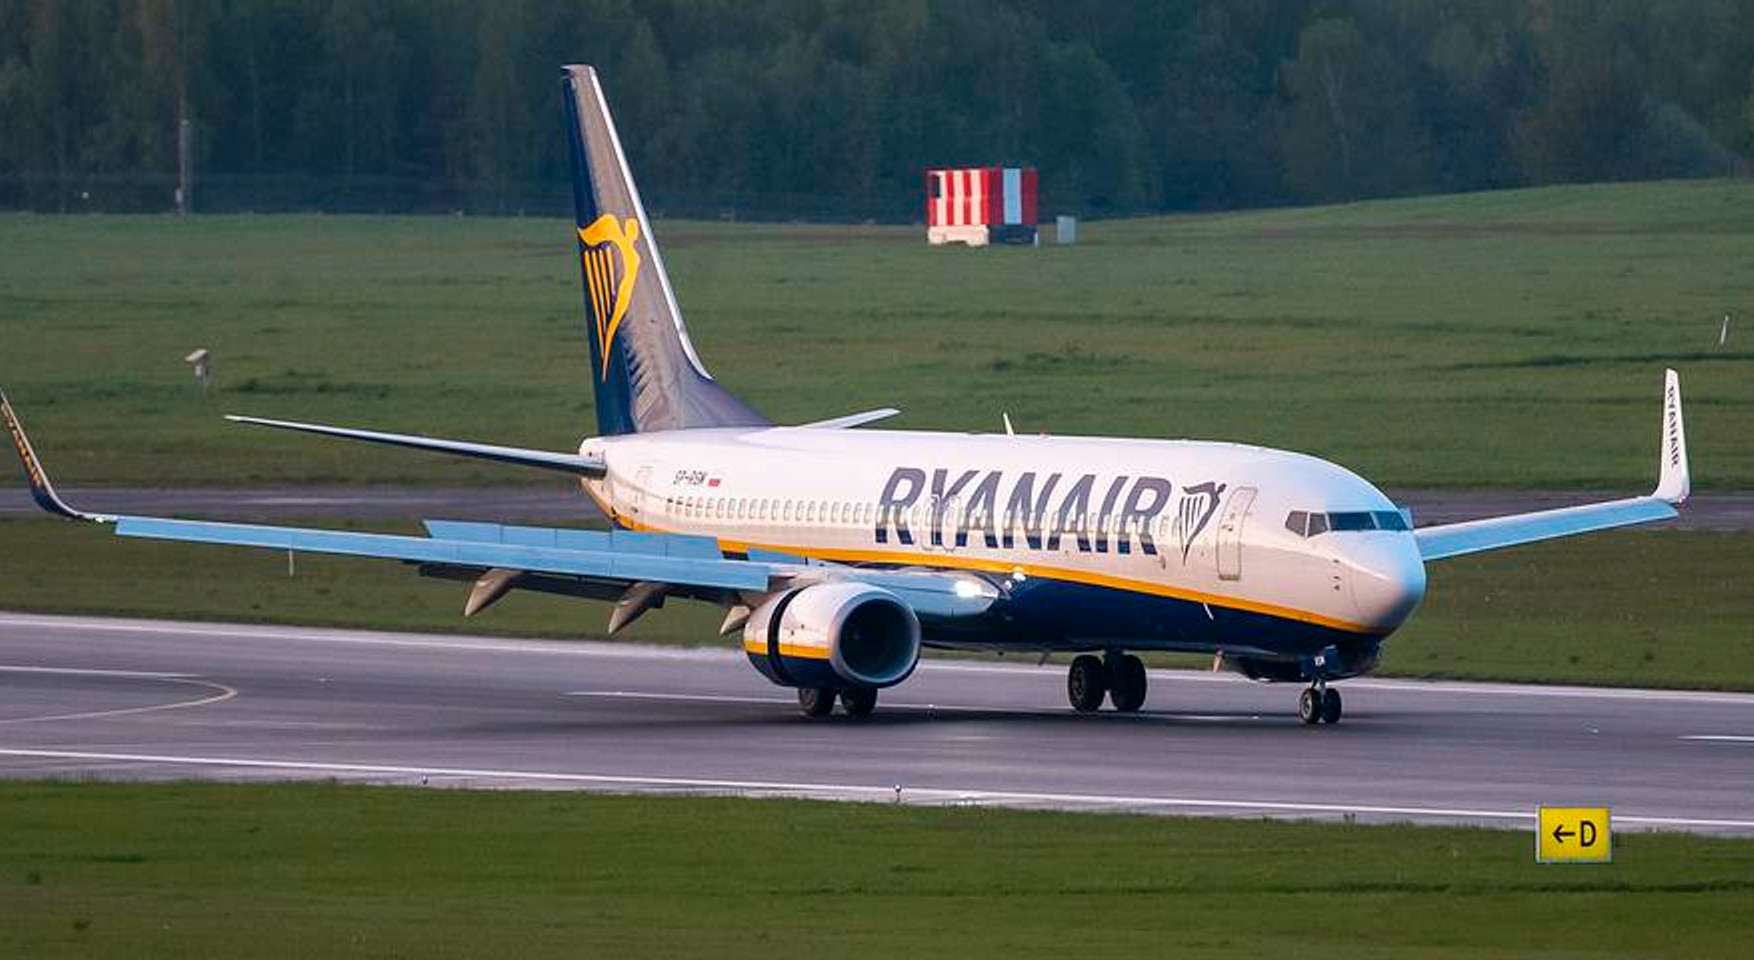 Центр «Досьє»: Диспетчери повідомили пілотам Ryanair про мінування літака на 27 хвилин раніше, ніж отримали повідомлення про бомбу